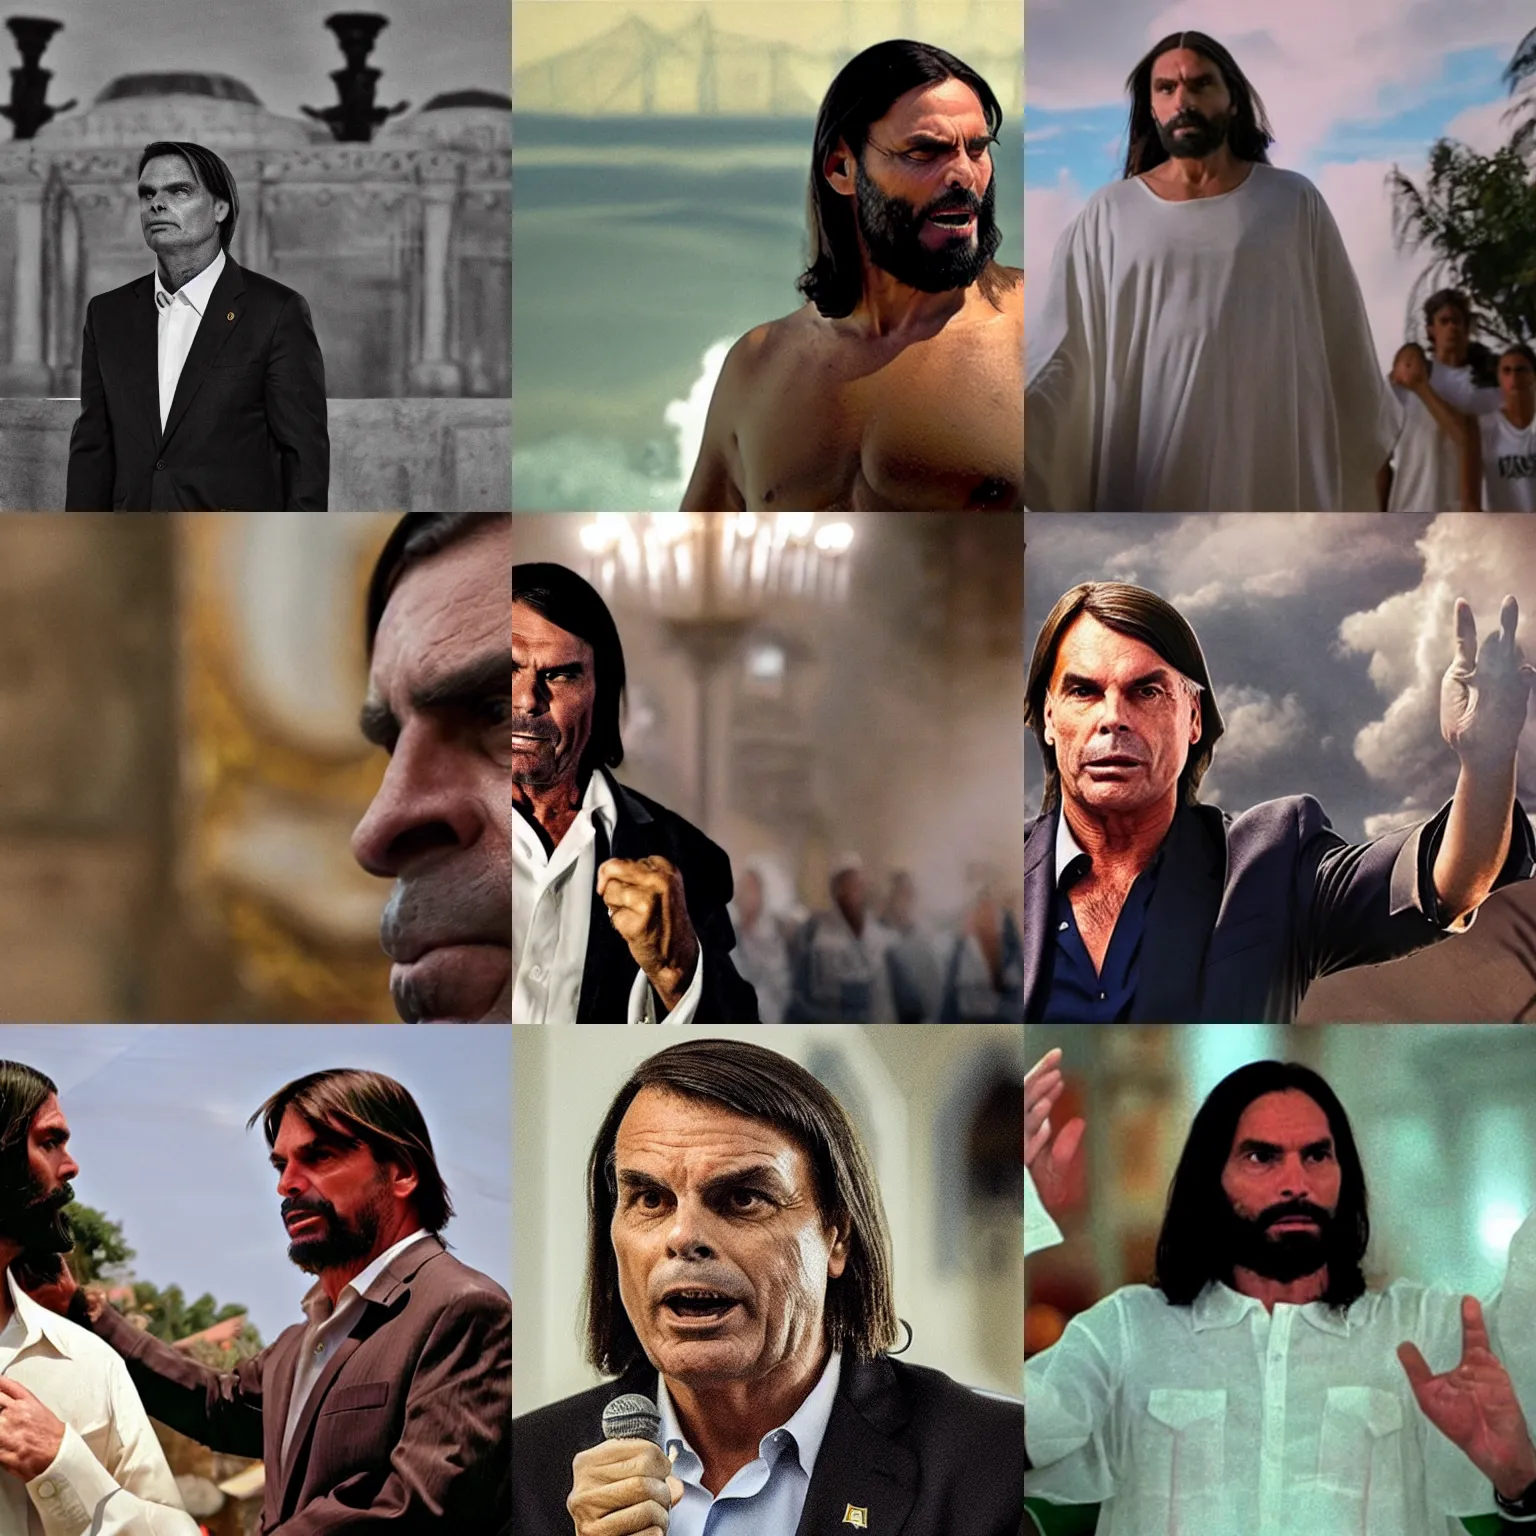 Prompt: Bolsonaro as Jesus, film still